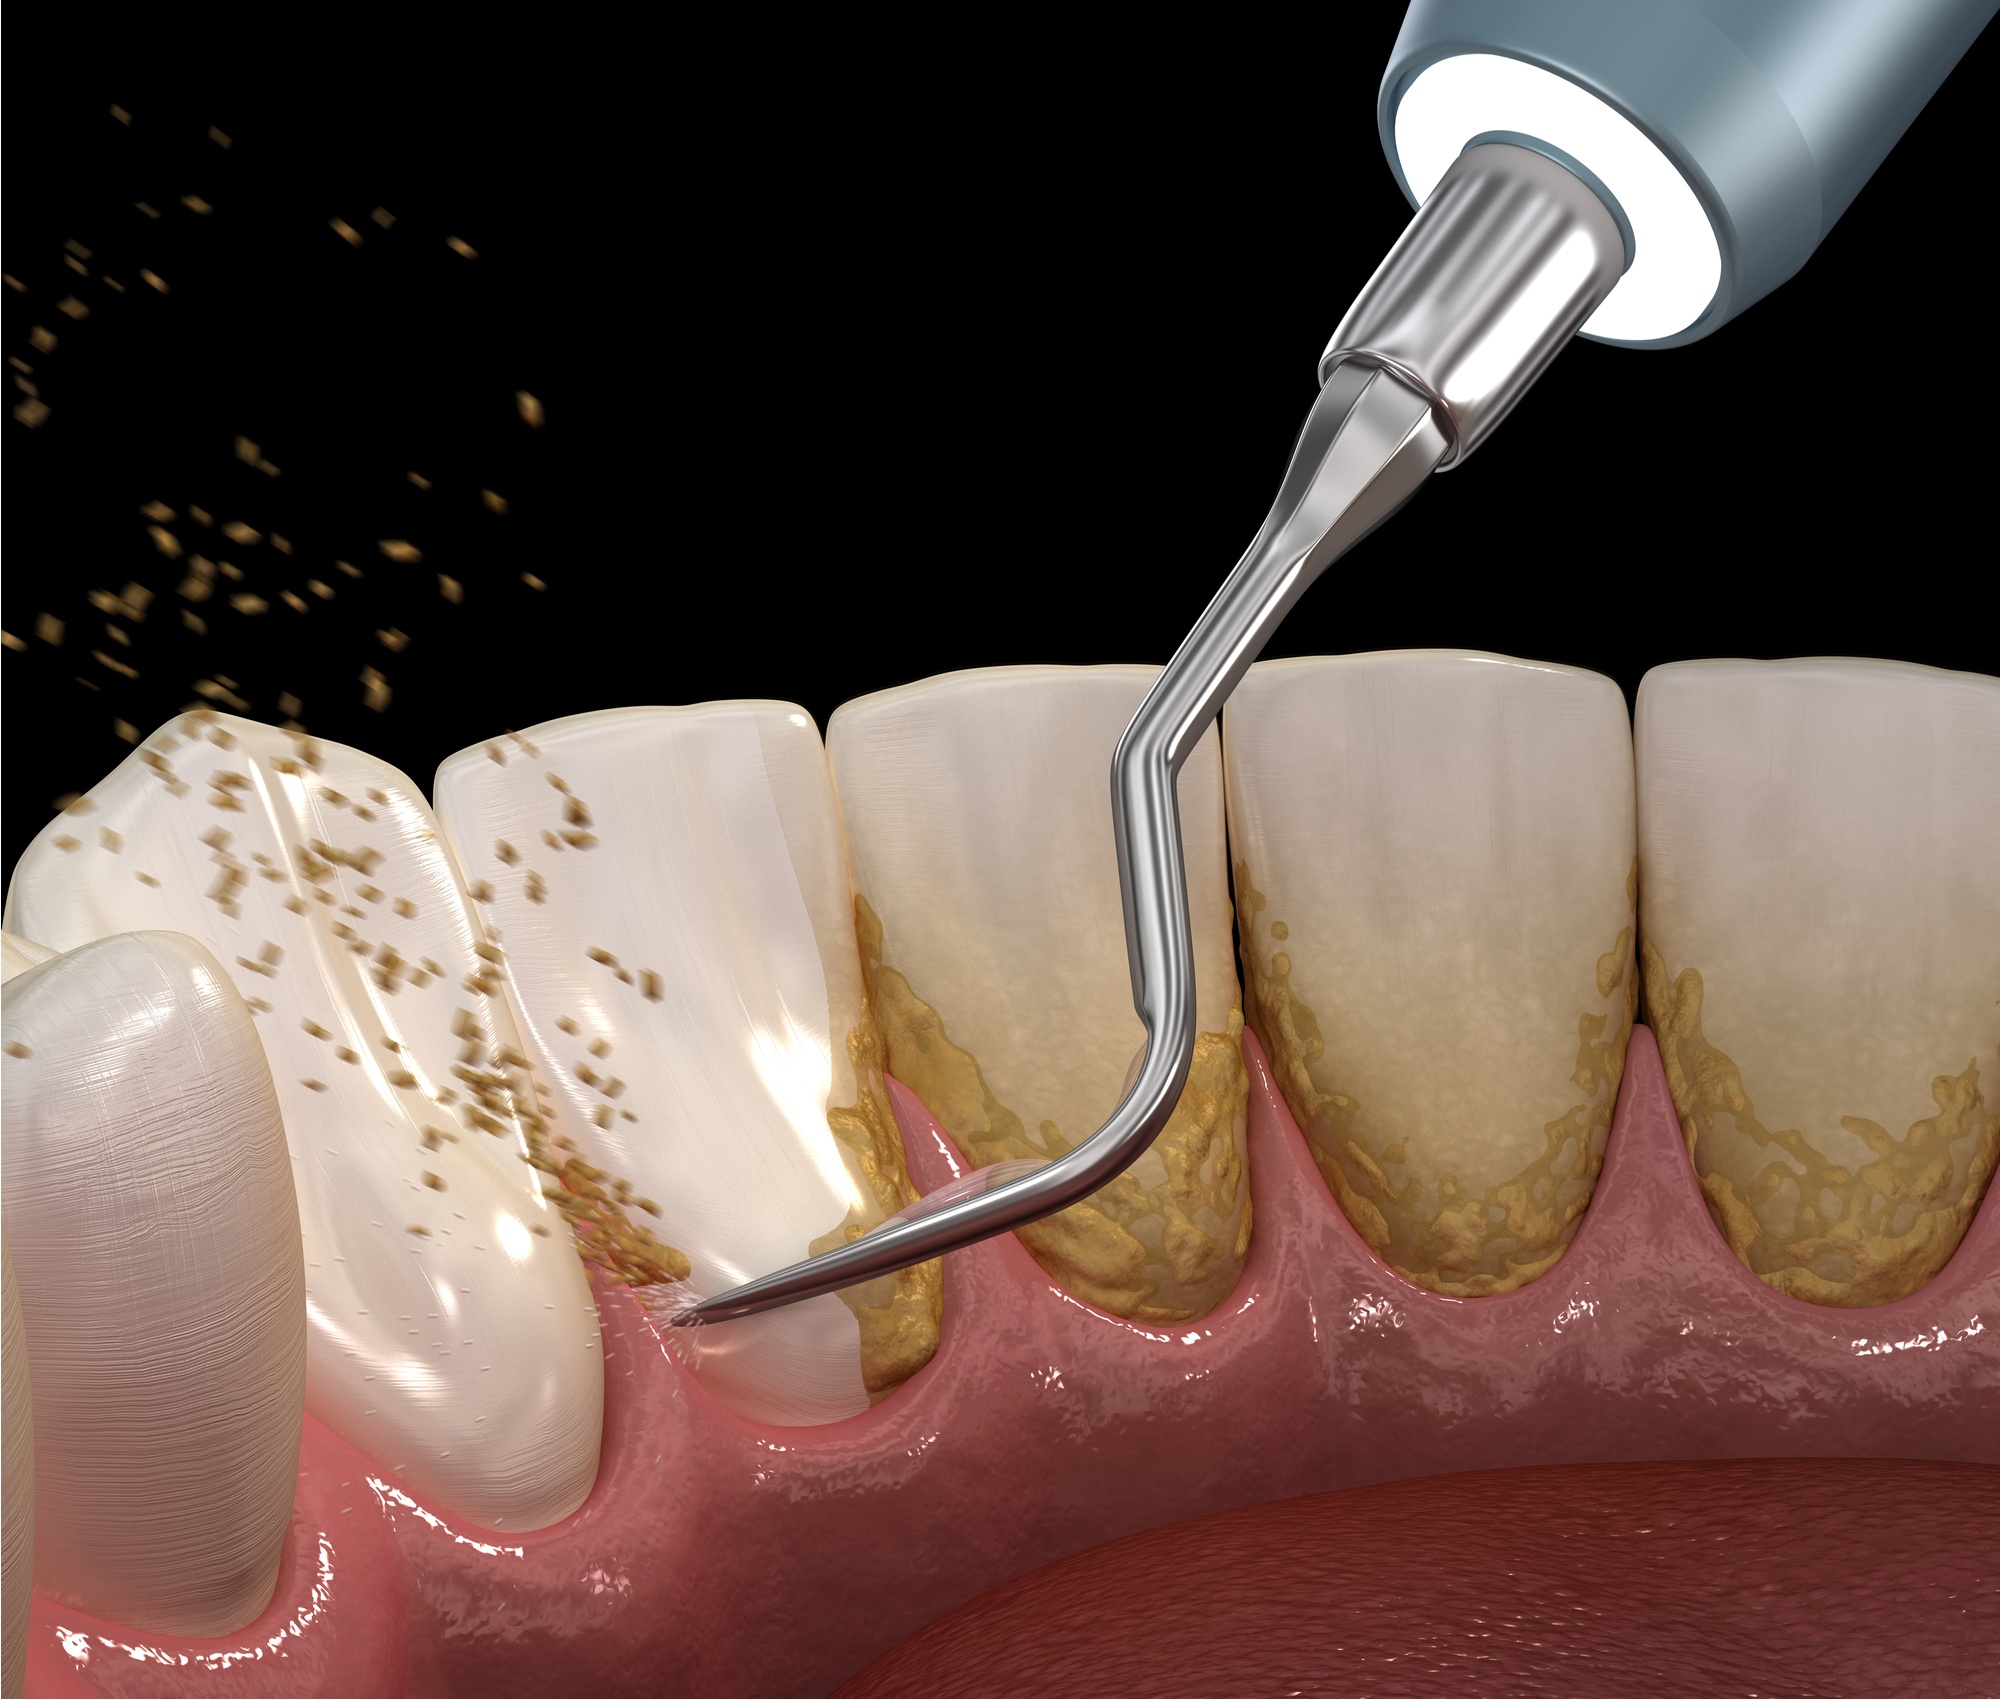 Энэ бол шүдний чулуунаас шүдийг цэвэрлэх үйл явц юм - мөрөөдлийн тайлбарын нууц